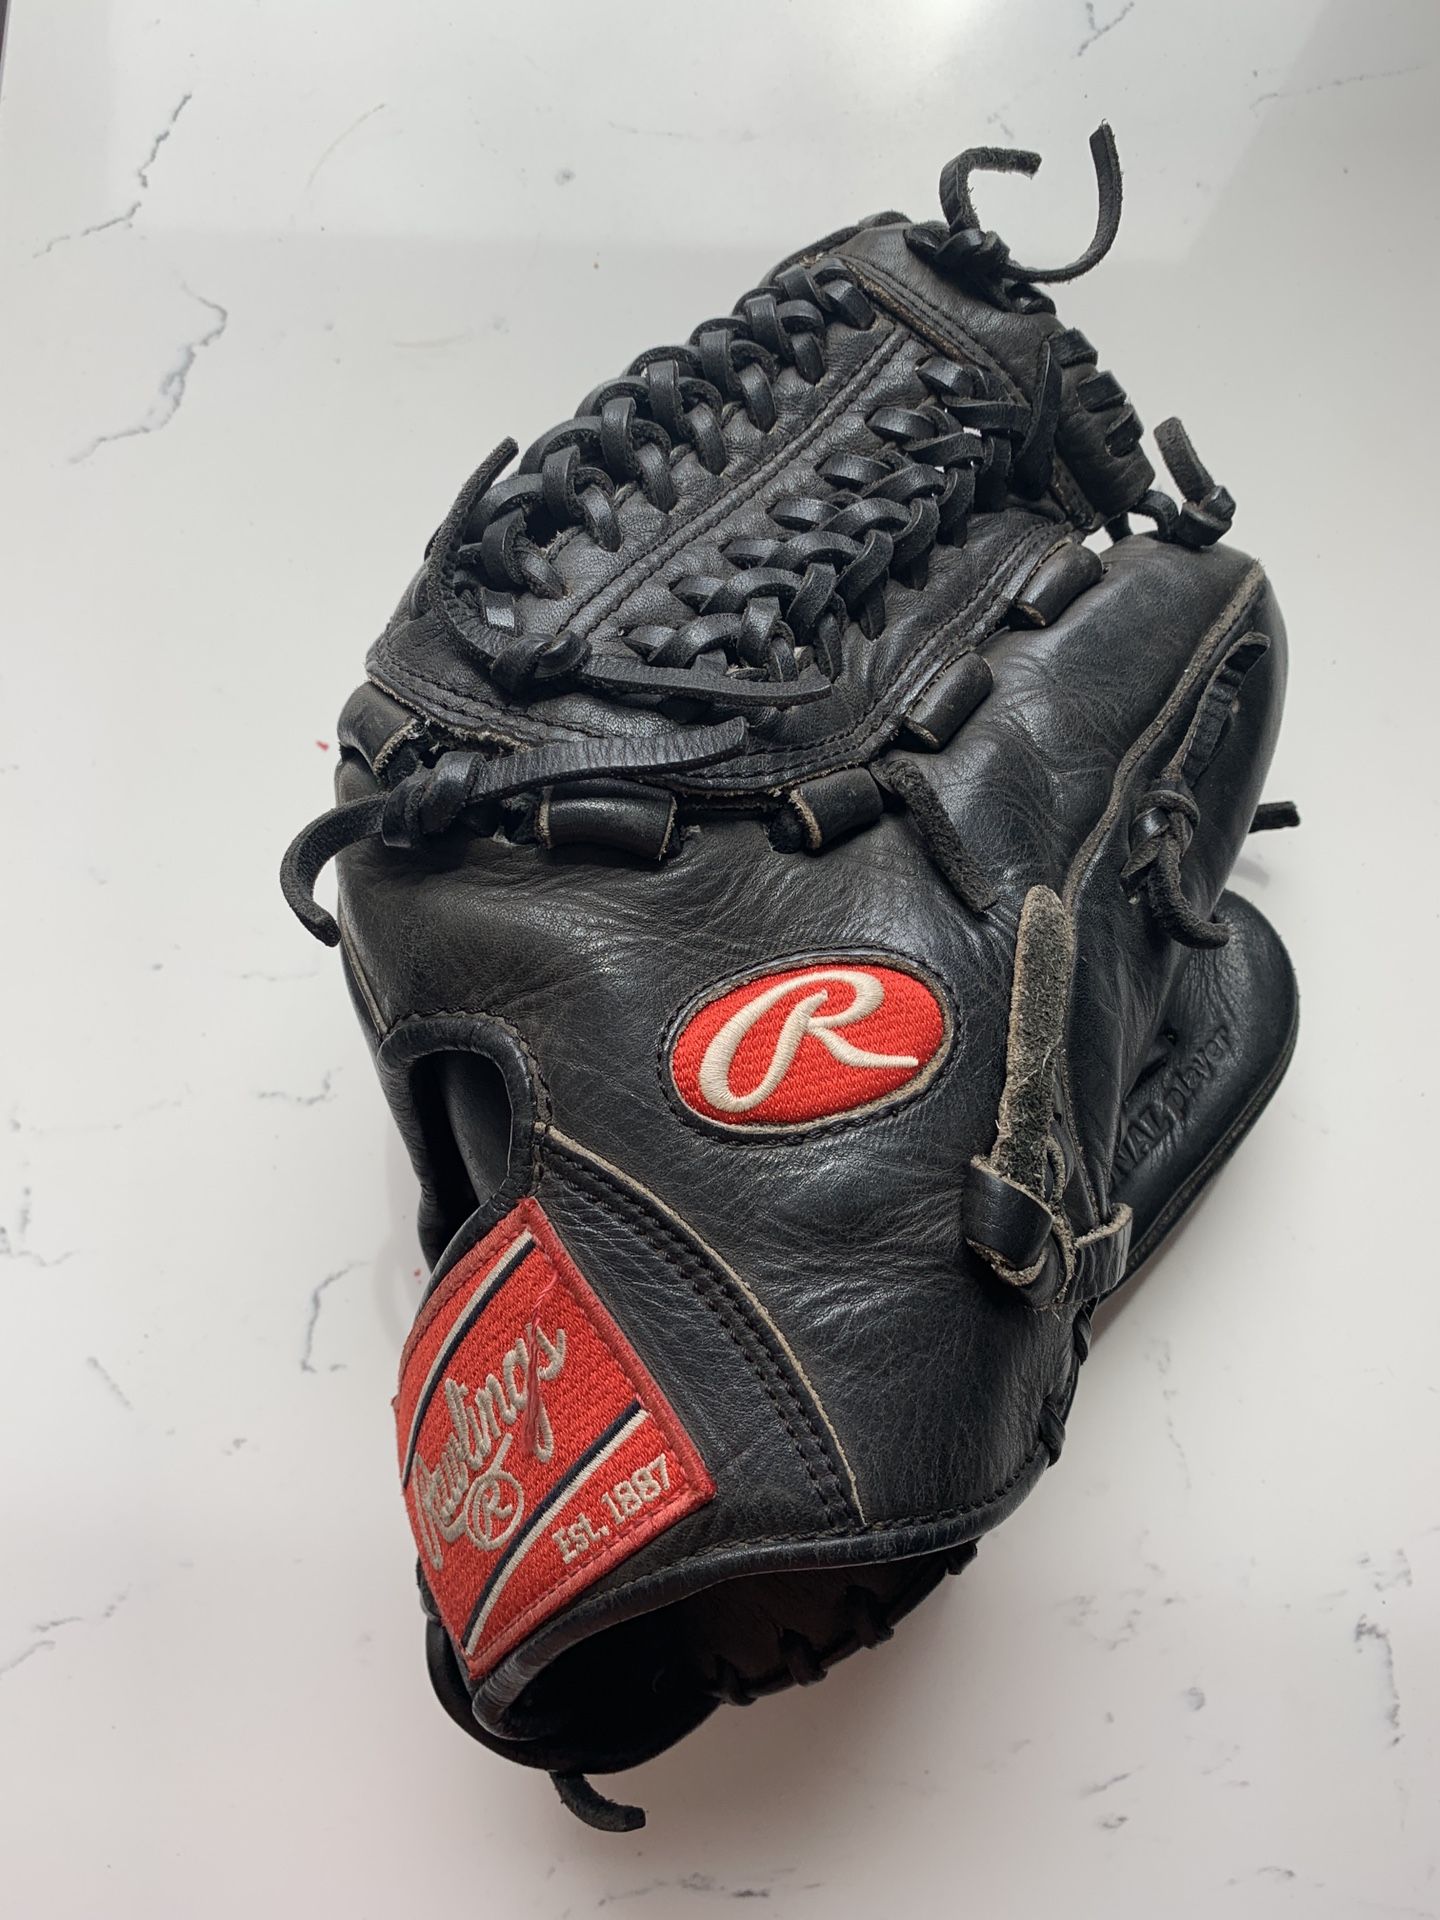 Rawlings Heart of Hide baseball glove